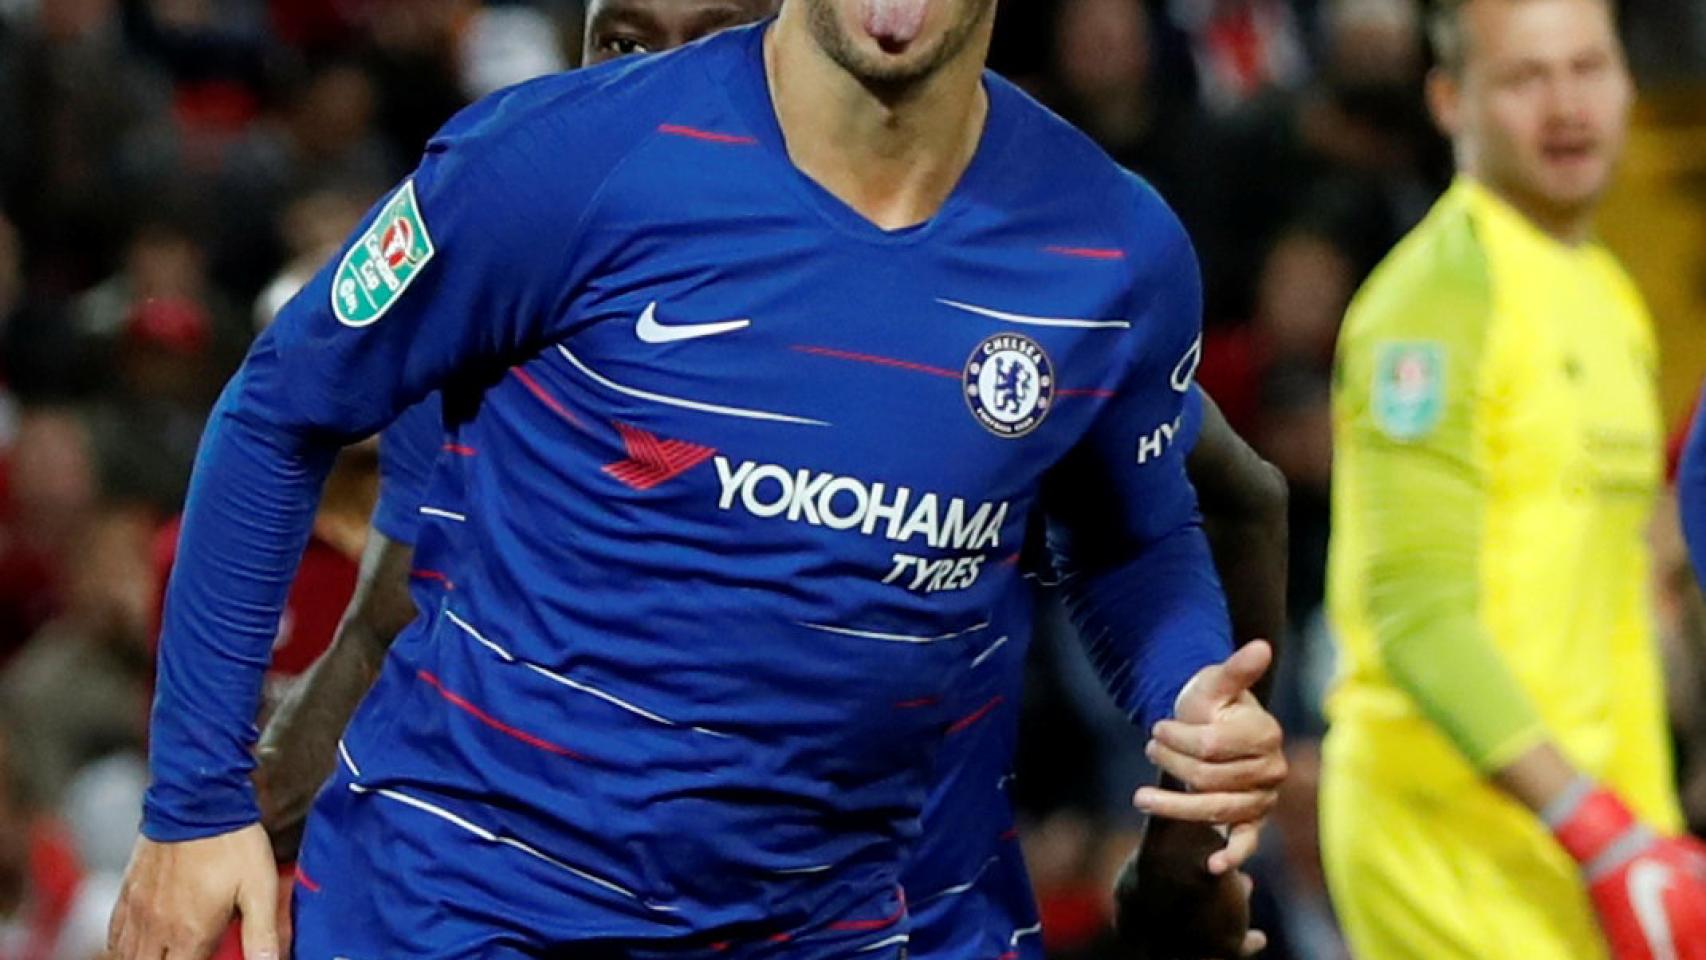 Hazard celebra un gol con el Chelsea